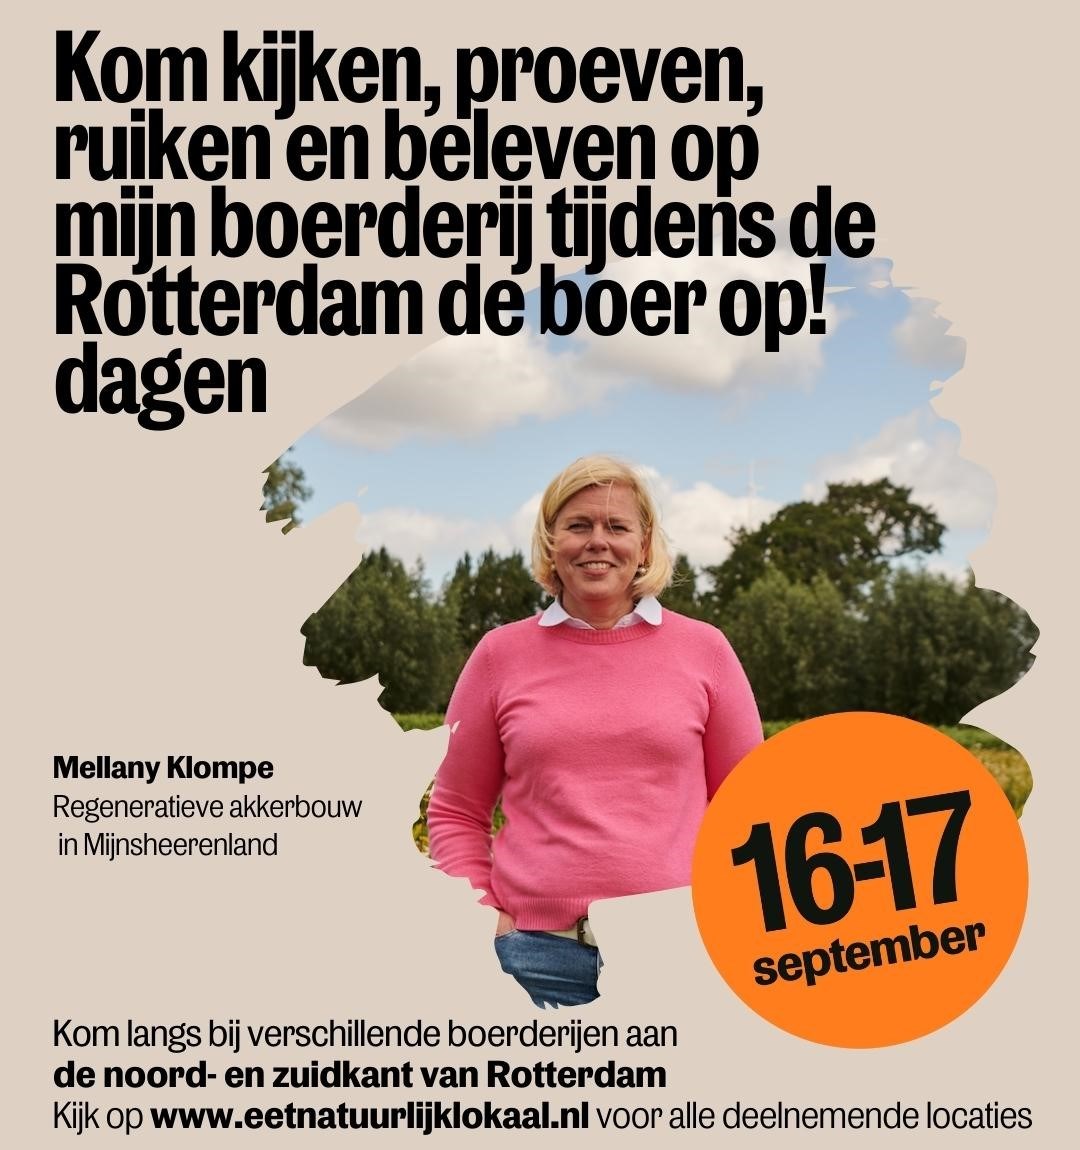 Bericht Beleef het boerenleven tijdens de 'Rotterdam de boer op! dagen' bekijken